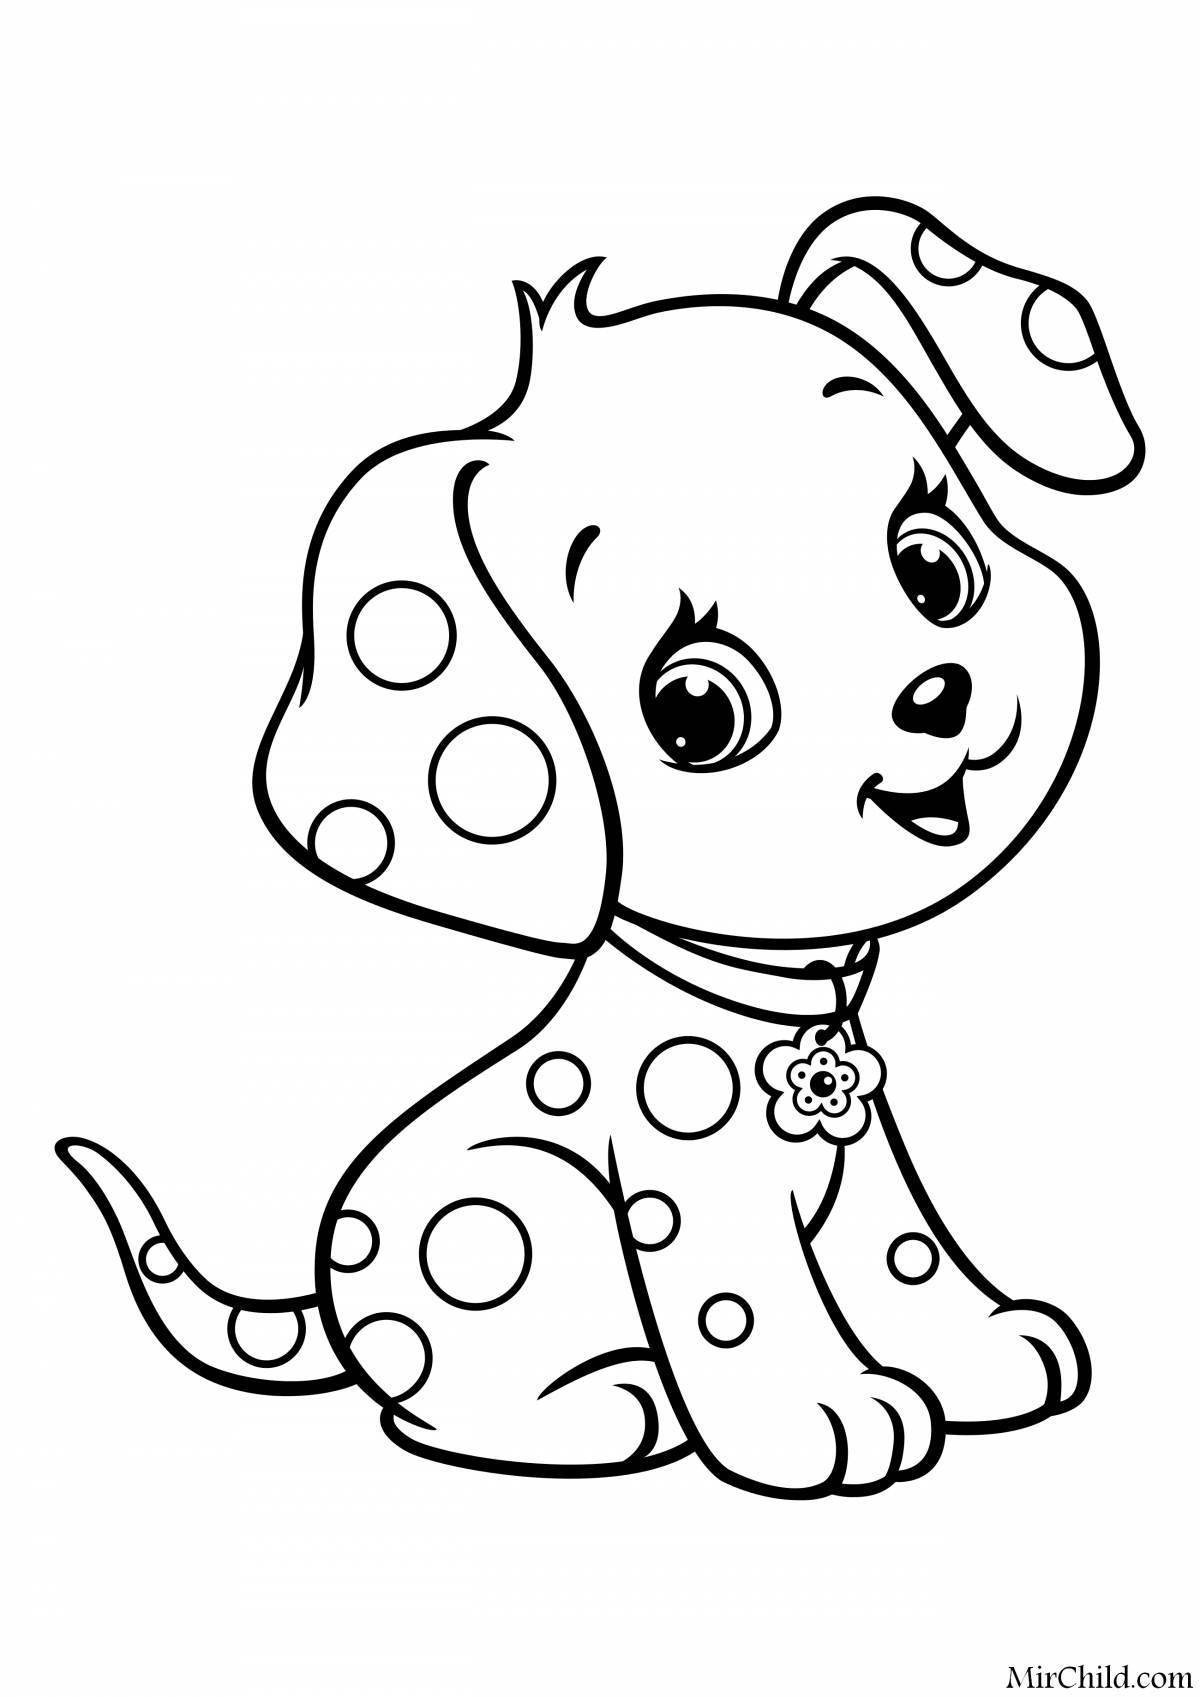 Раскраски собак и щенков распечатать на А4 для детей